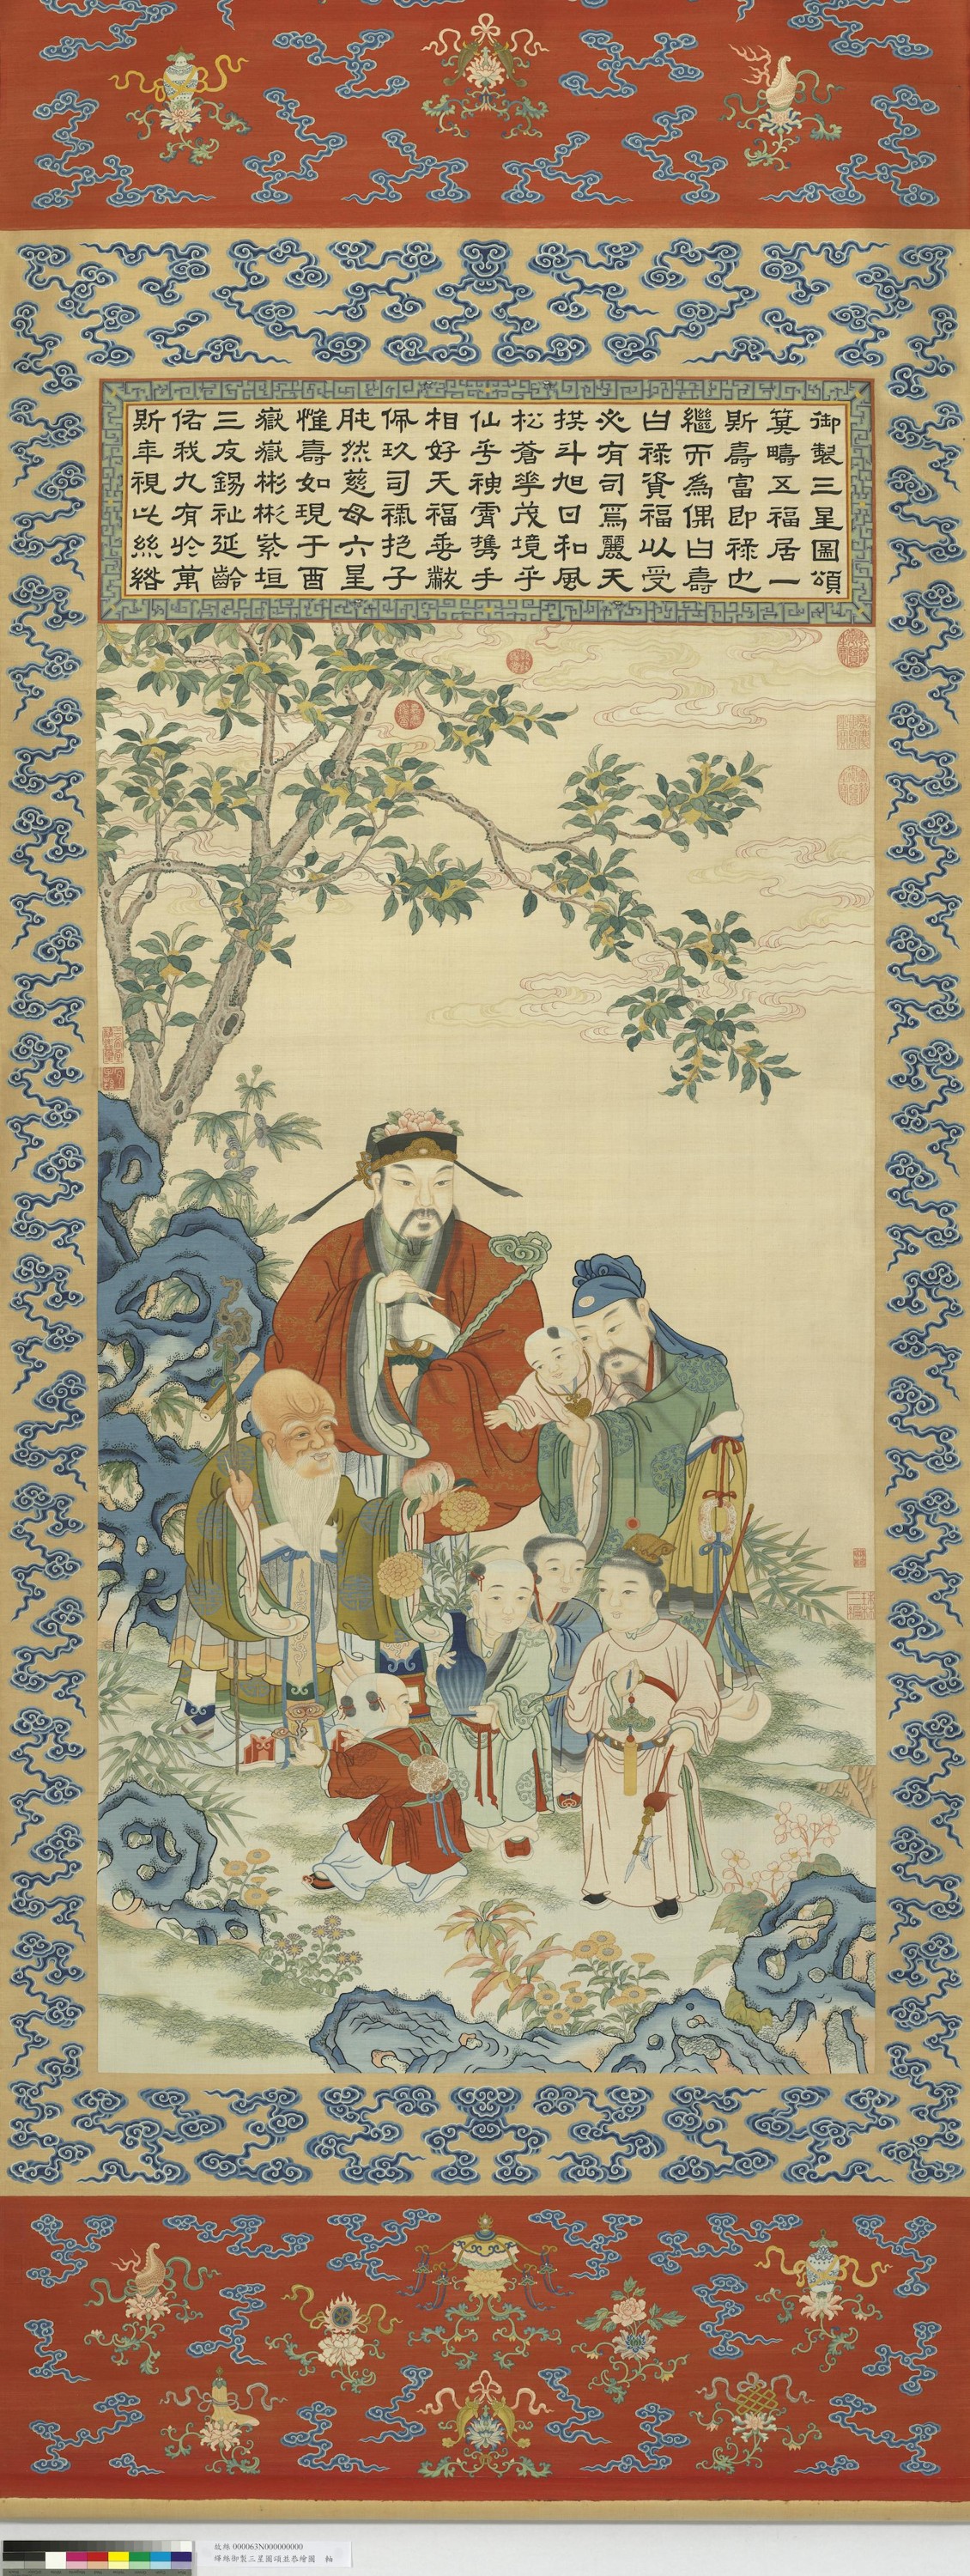 Qing kesi yuzhi sanxingtu song bing gonghui tuzhou 清 緙絲御製三星圖頌並恭繪圖 軸